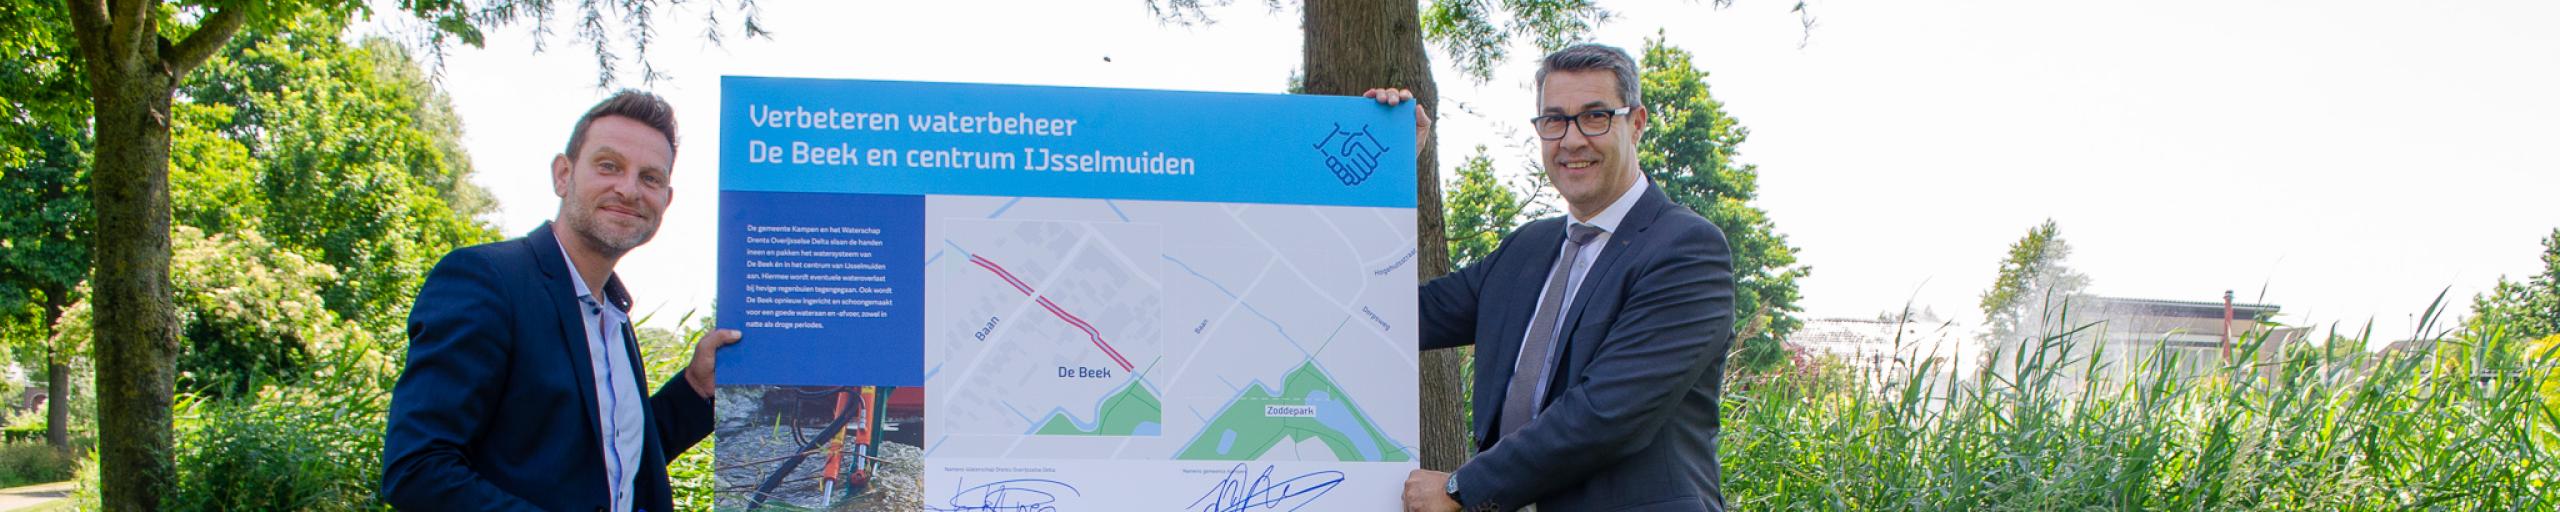 Start samenwerking gemeente Kampen en waterschap watersysteem  De Beek  en IJsselmuiden